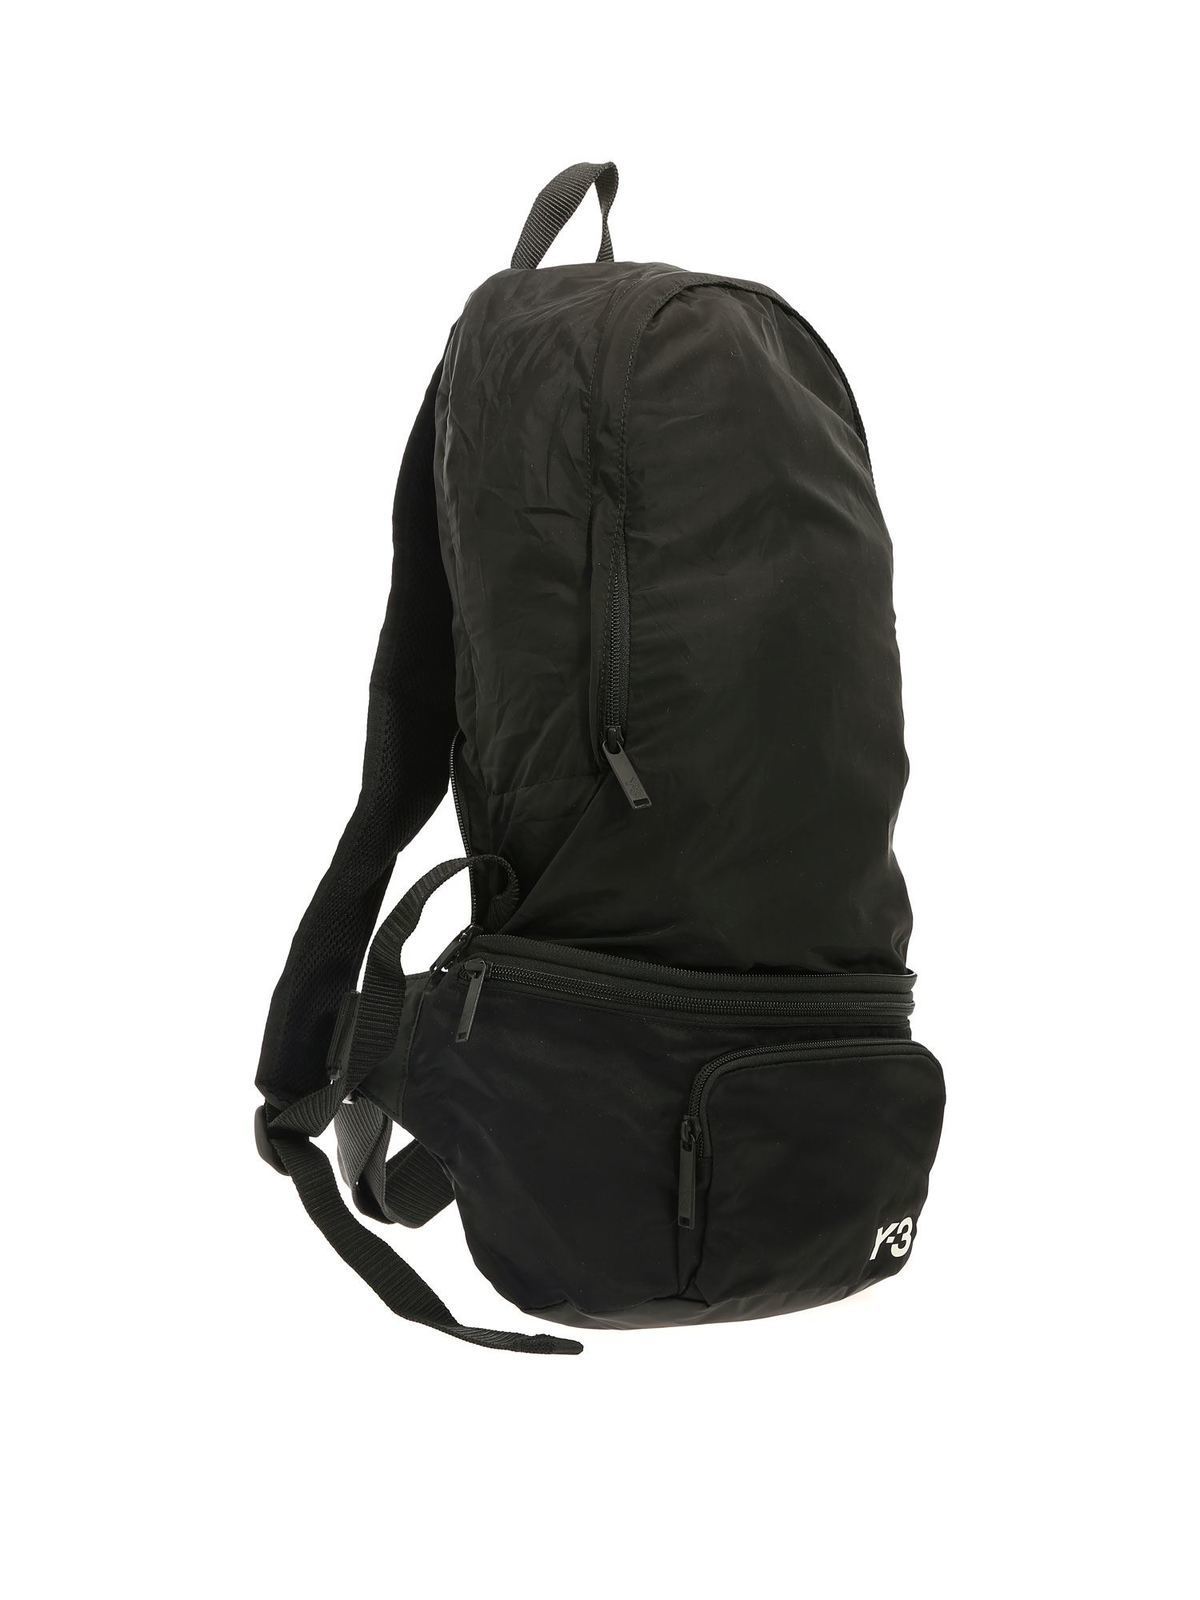 y3 black backpack